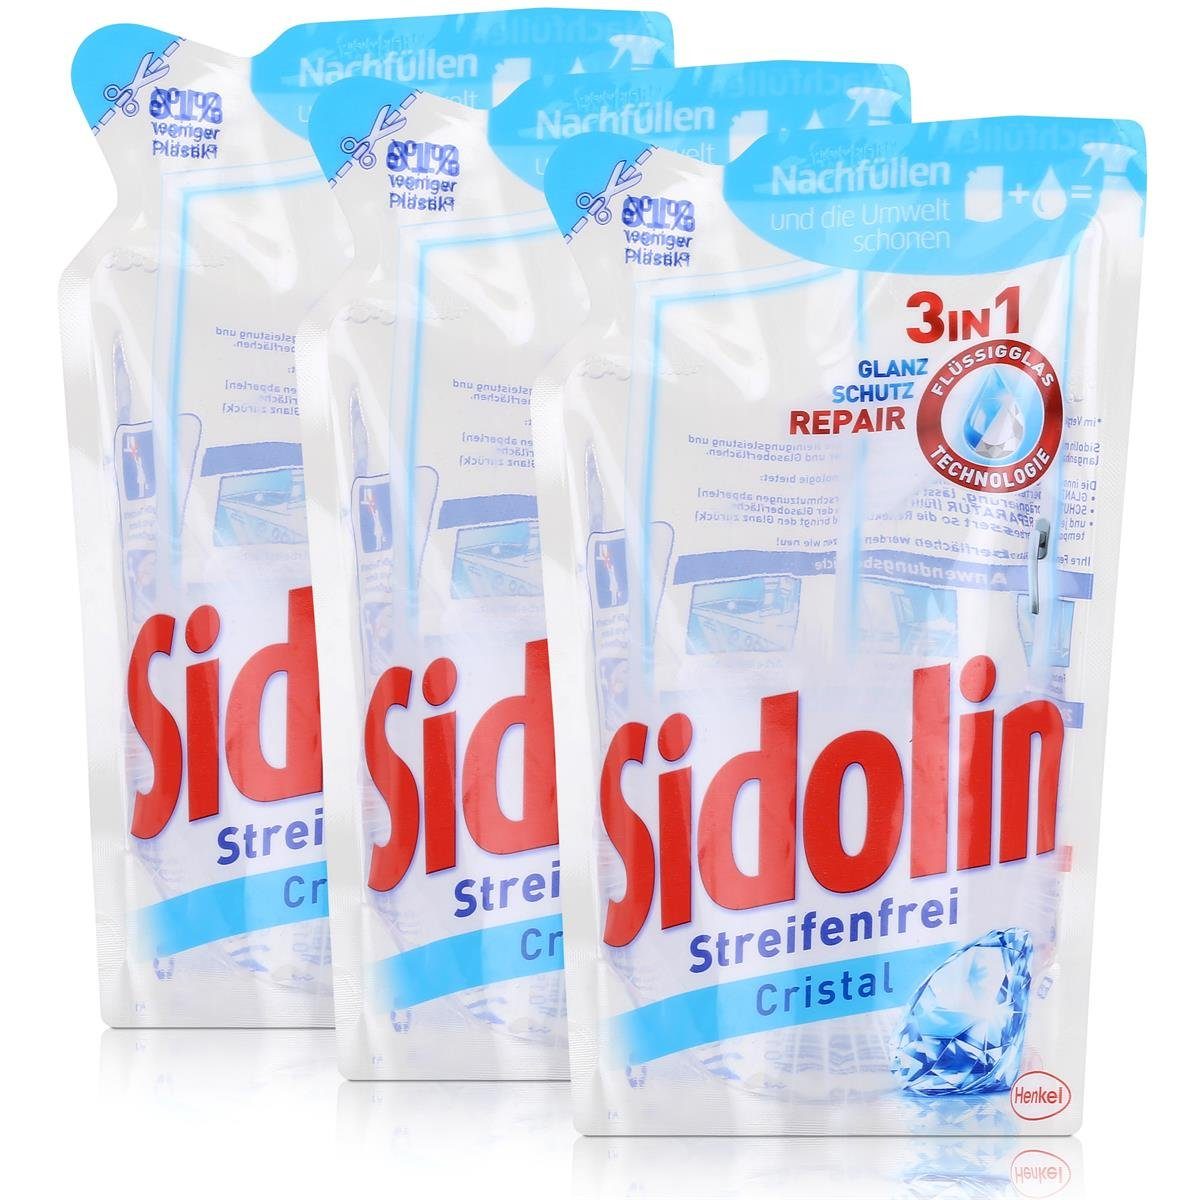 SIDOLIN Sidolin Streifenfrei Cristal Nachfüller - Glasreiniger Glasreiniger Pack (3er 250ml